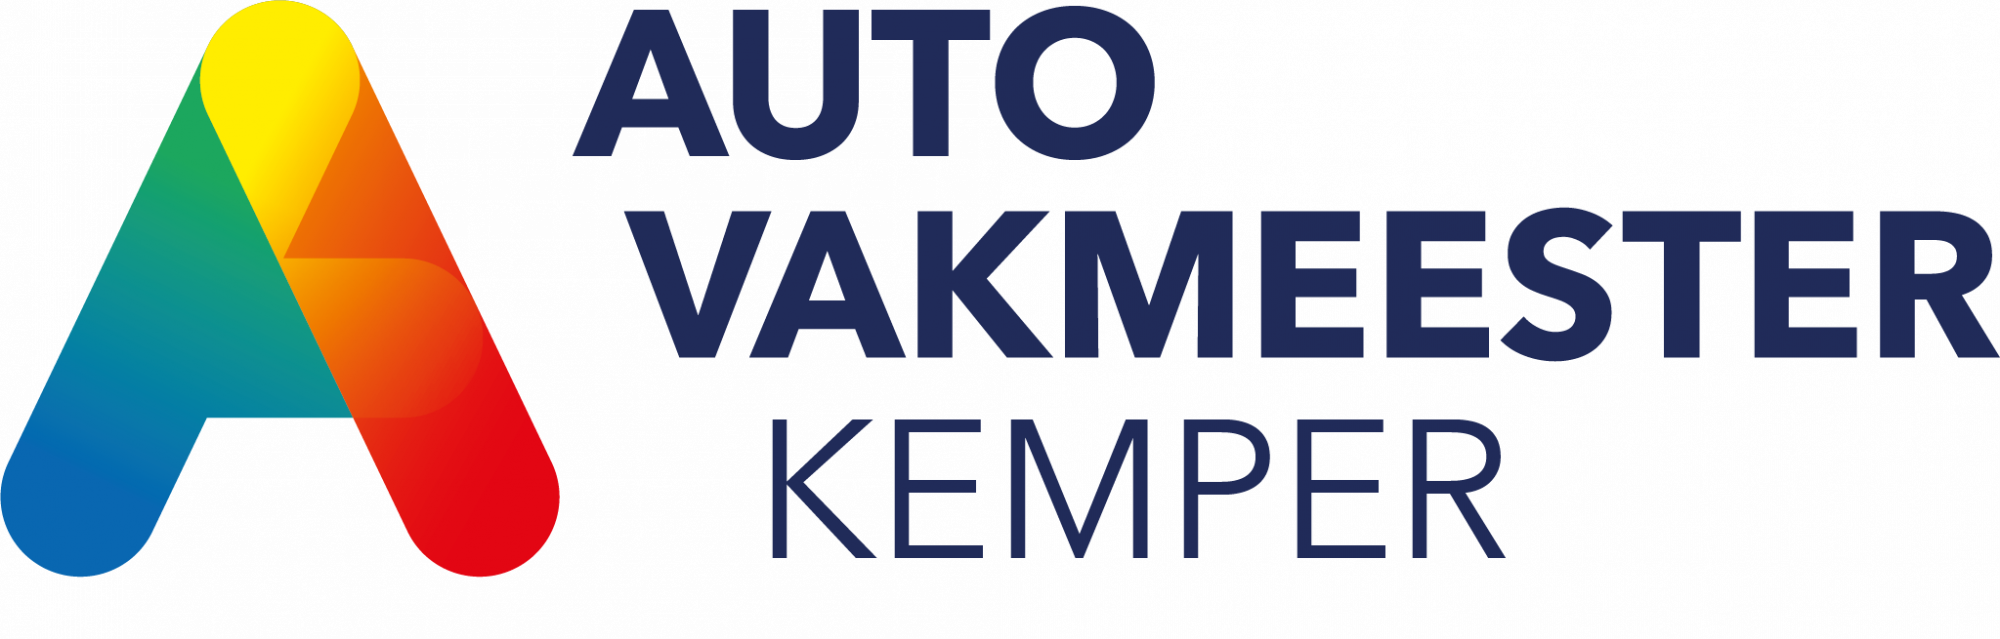 Autovakmeester Kemper